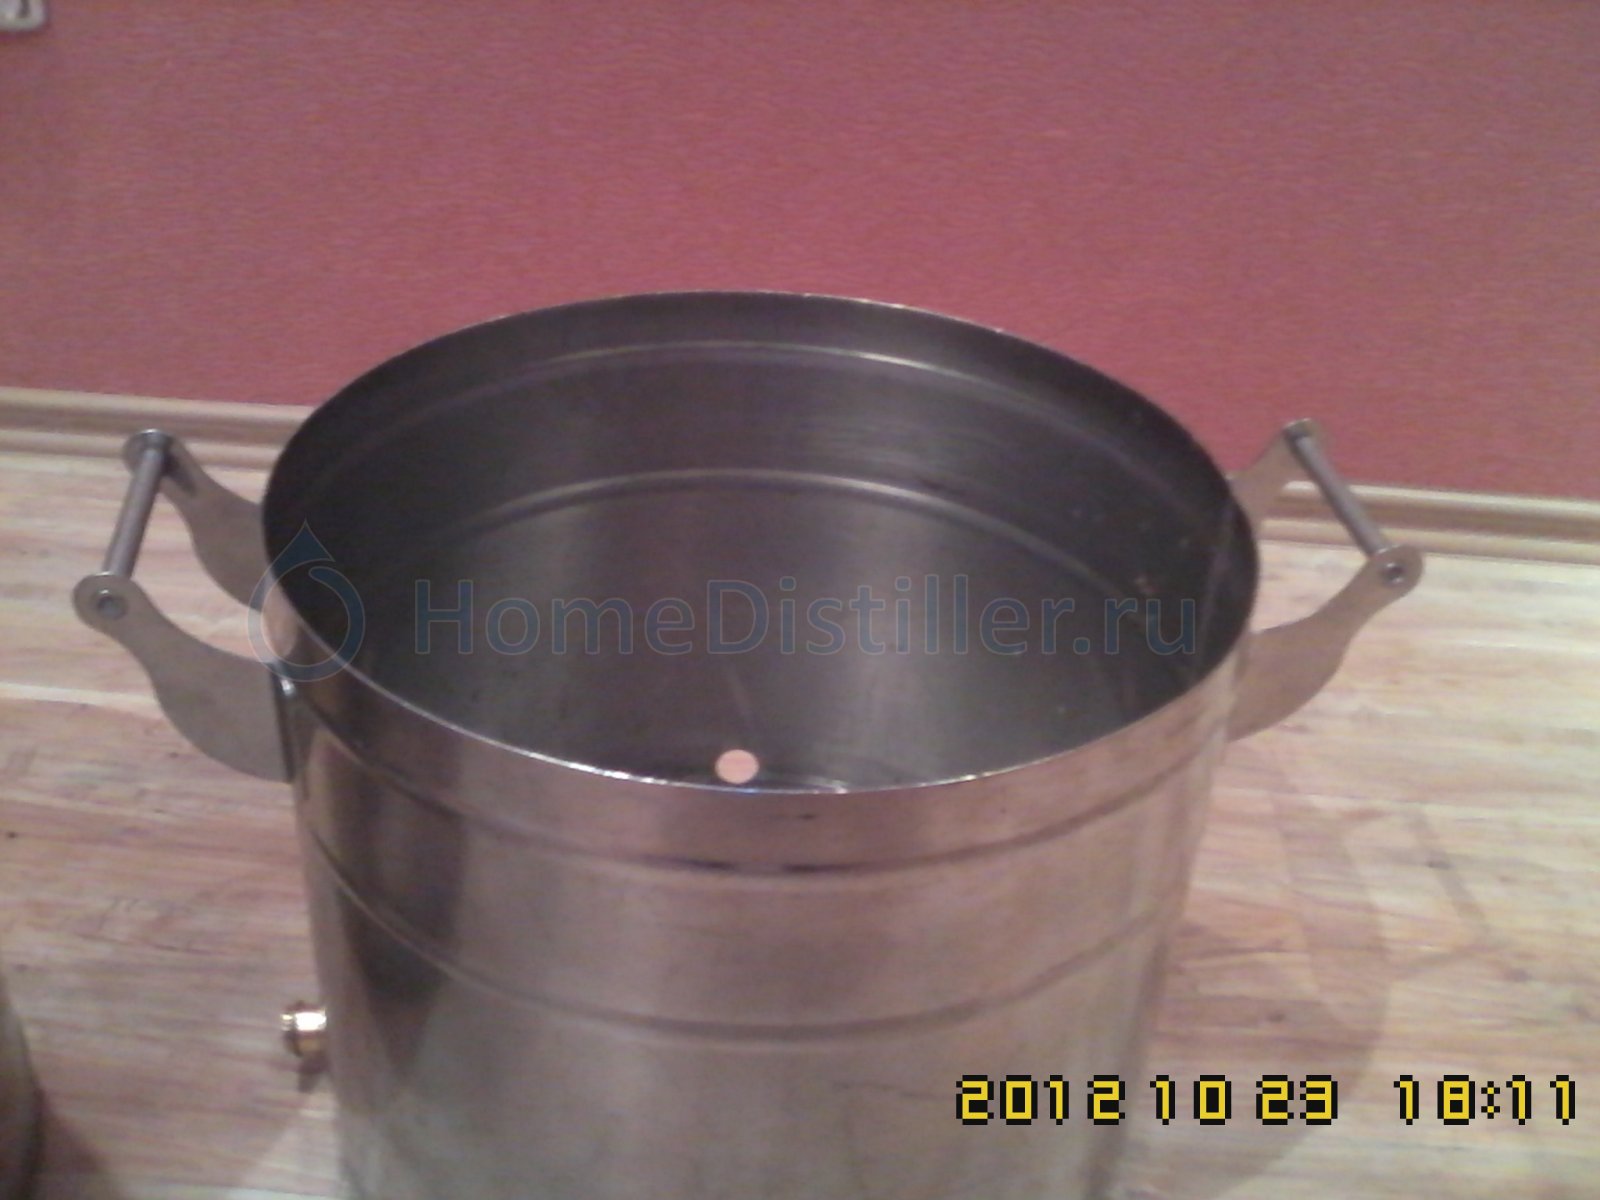 kastriylya.jpg Изготовление варочника для пива на 120 литров